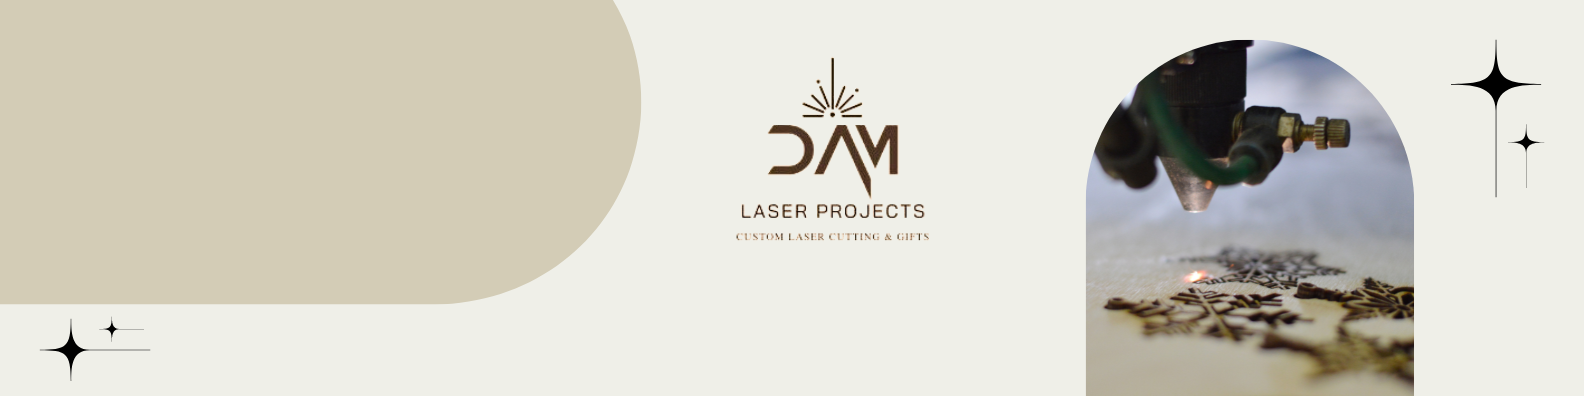 Laser by DAM